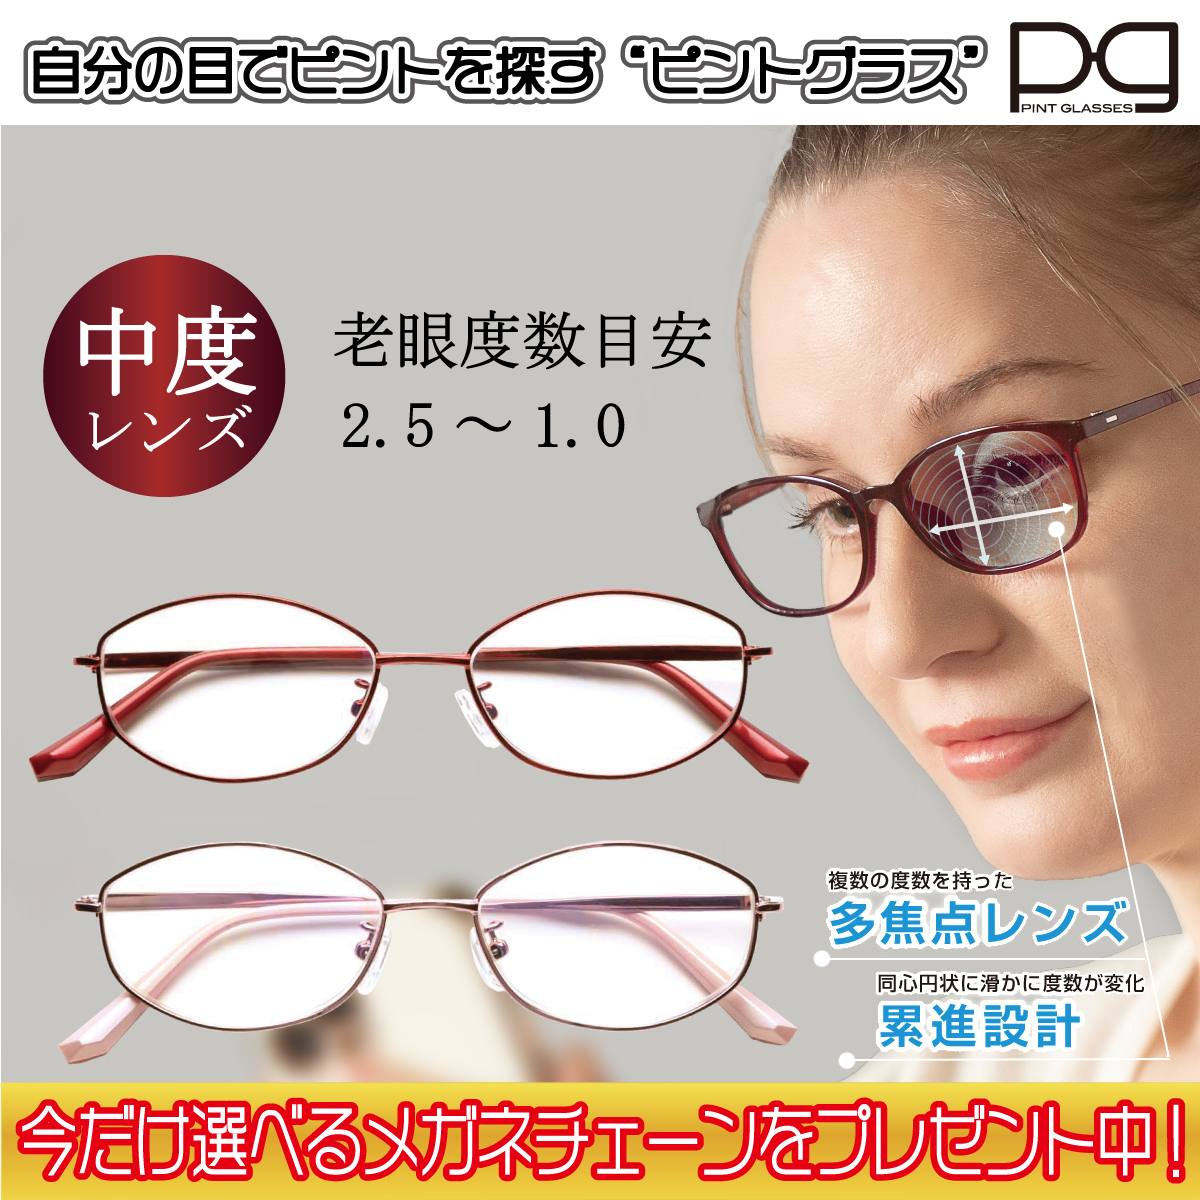 ピントグラス プレゼント付き 中度 レンズ 度数 +0.6〜+2.5D 老眼鏡 シニアグラス 累進レンズ PINT GLASSES 視力補正  ピントが合う PG-703-PK PG-703-RE